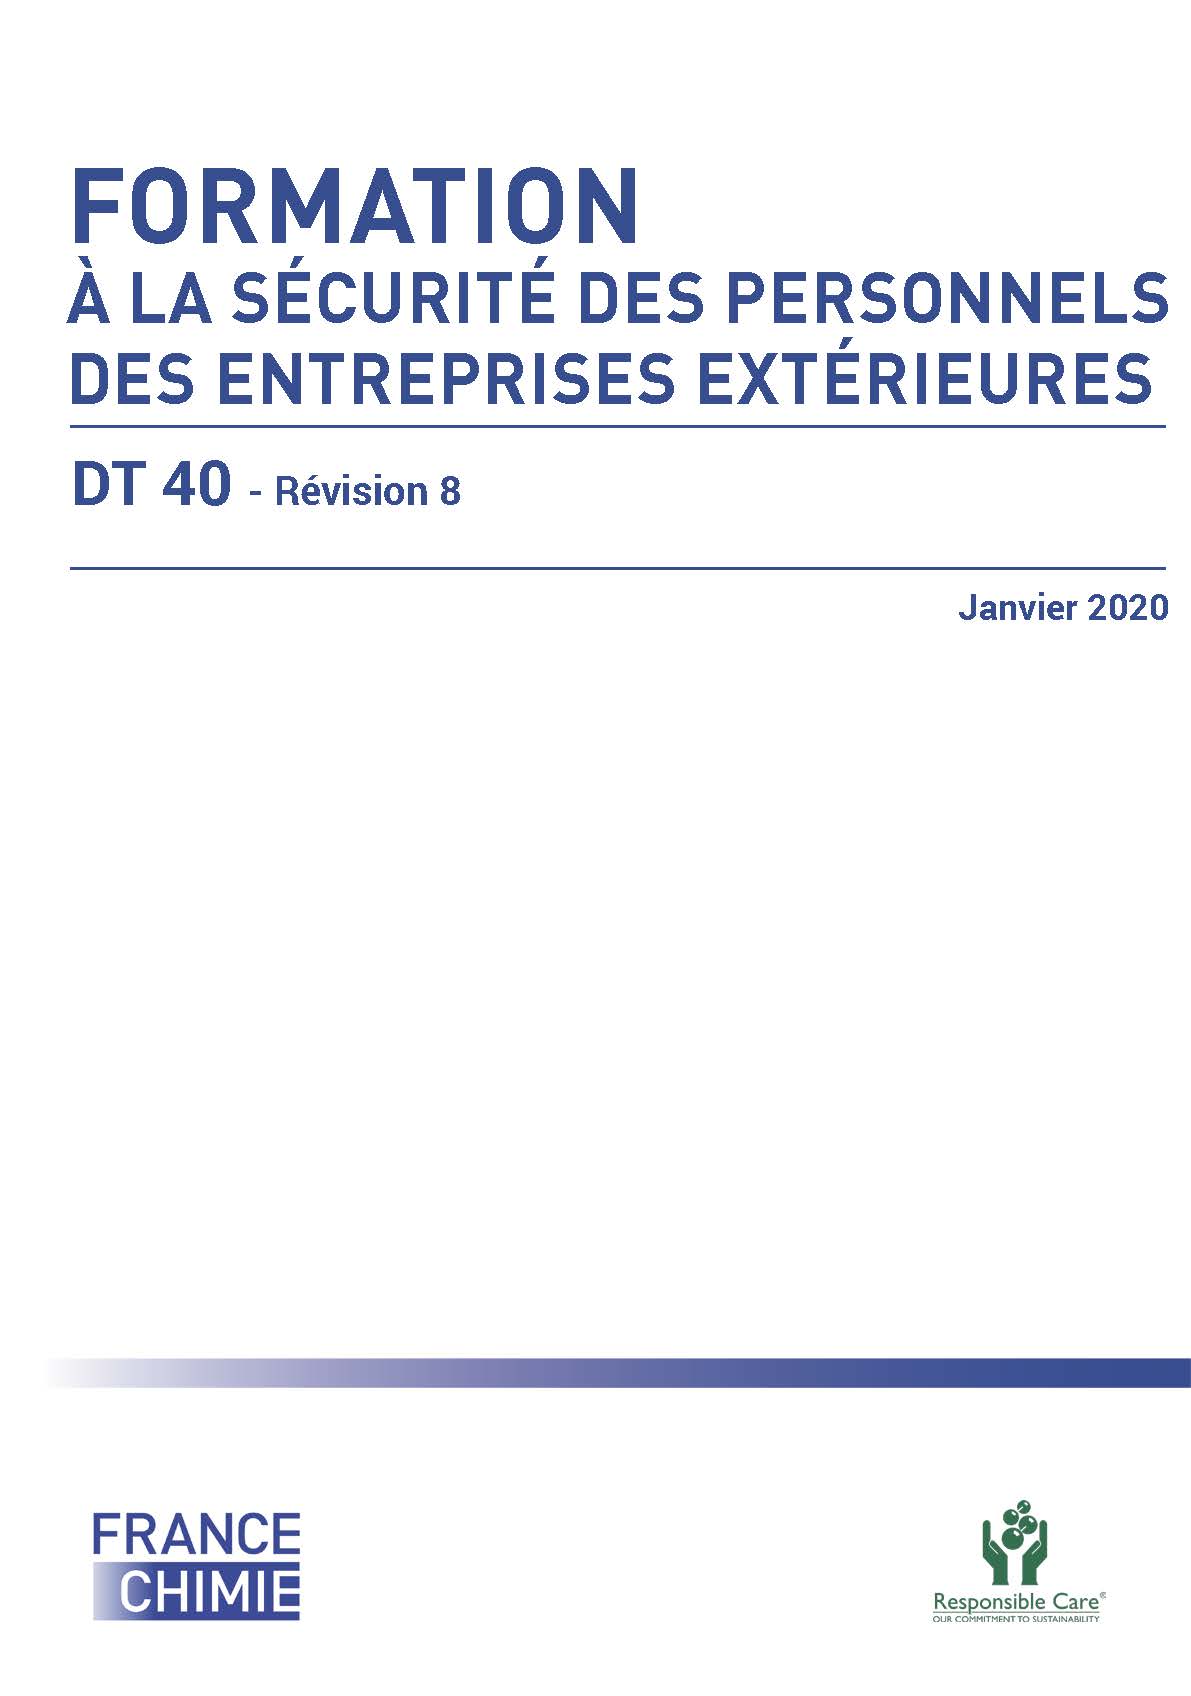 DT 40 Rev. 8 - Formation à la sécurité des personnels des entreprises extérieures